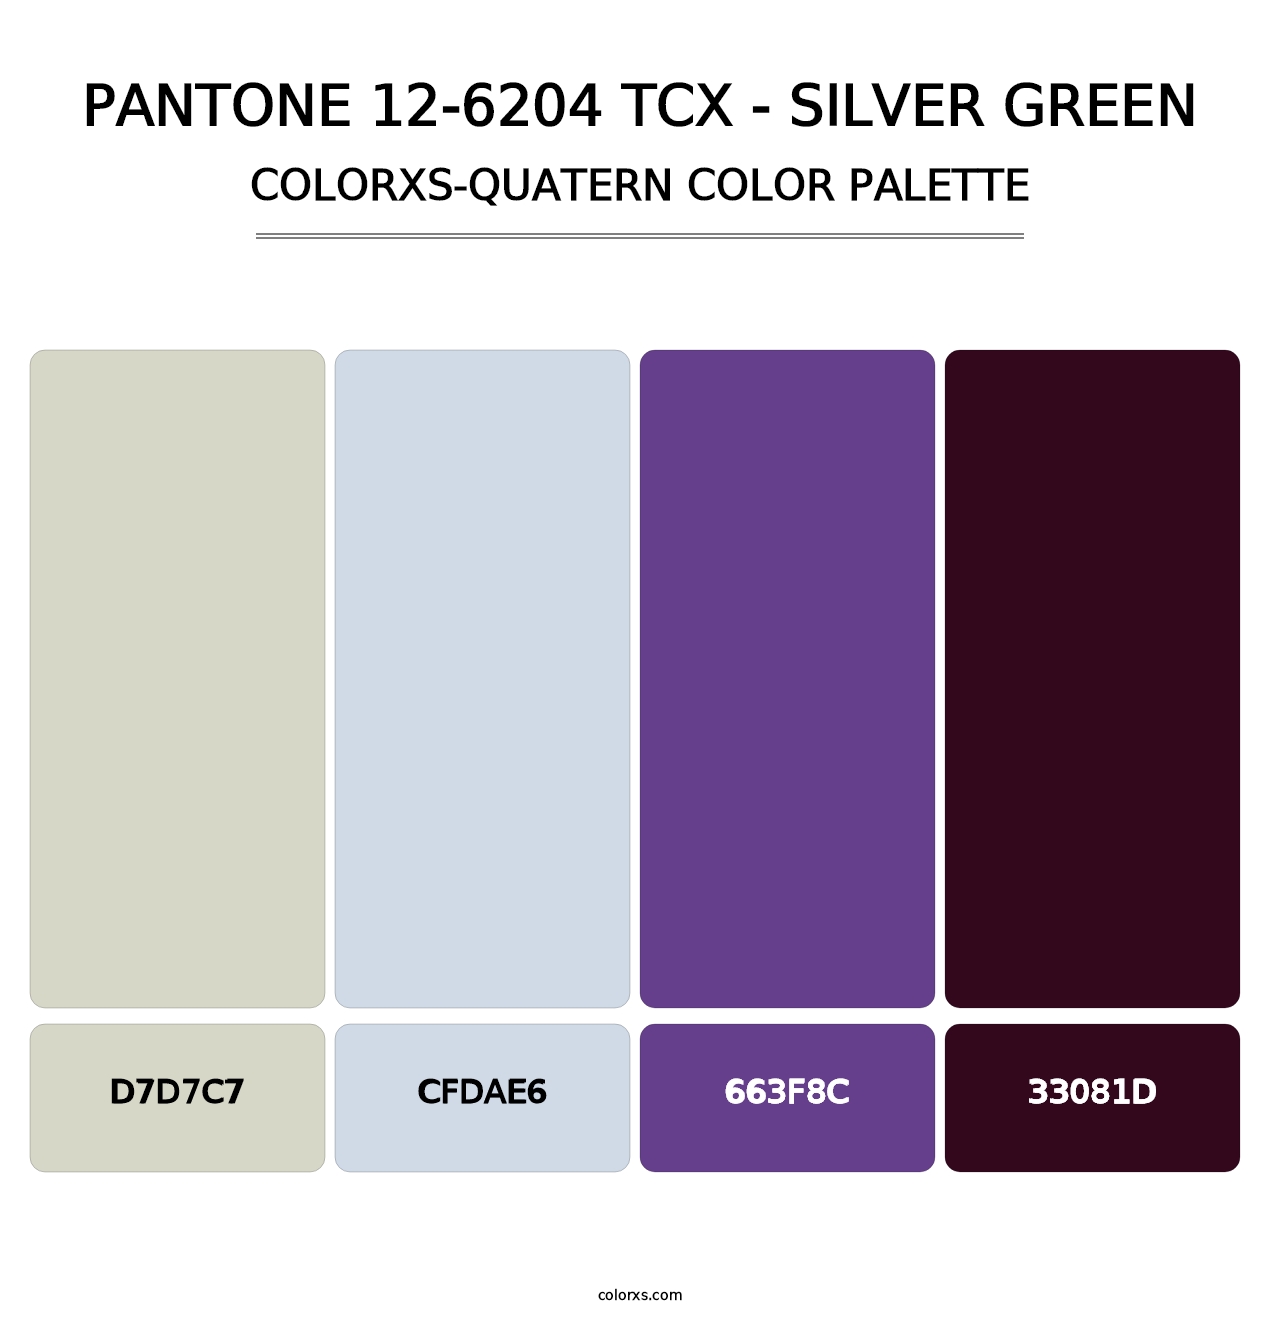 PANTONE 12-6204 TCX - Silver Green - Colorxs Quatern Palette